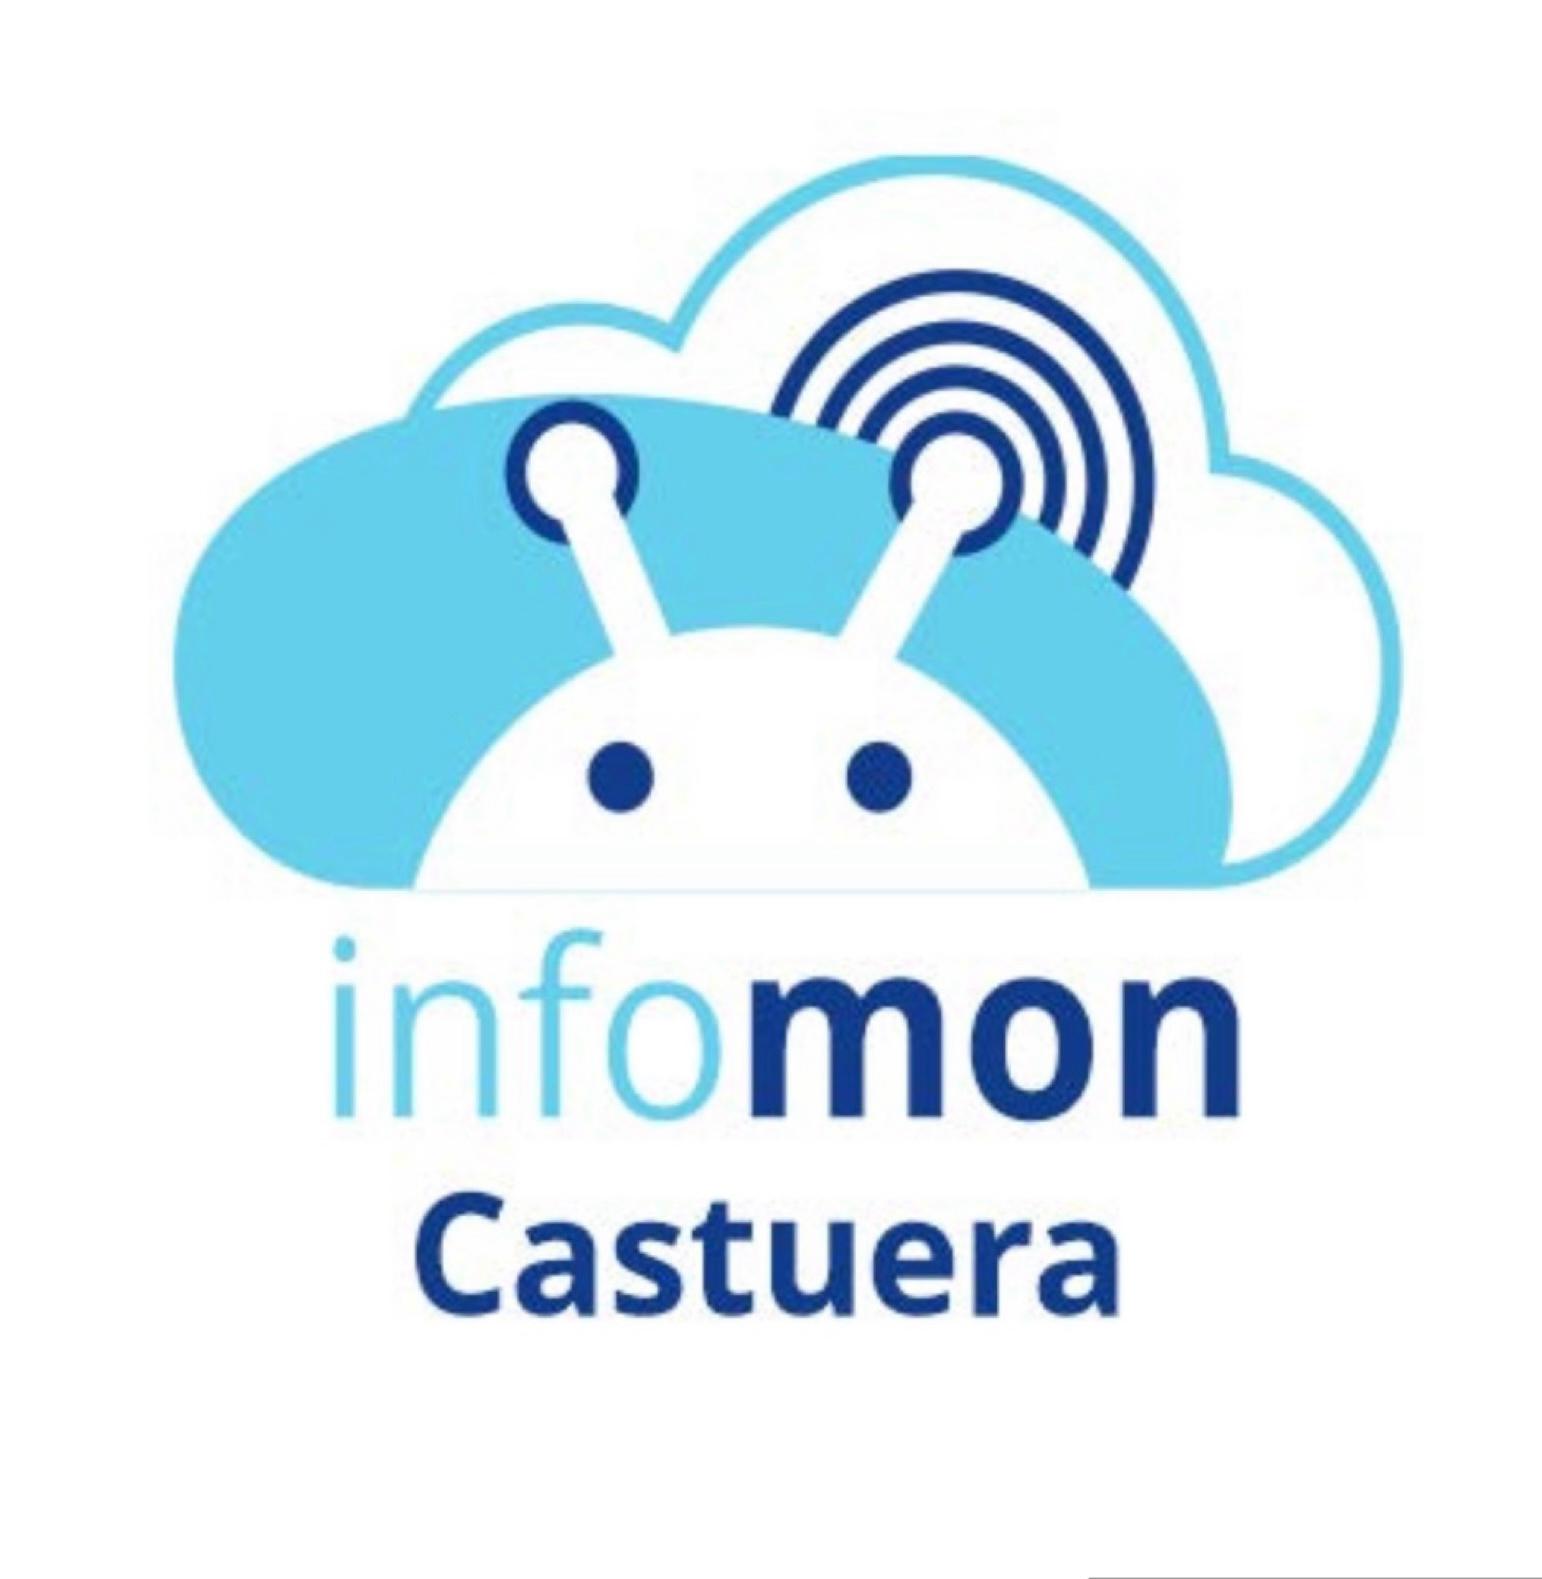 Images Infomon Castuera